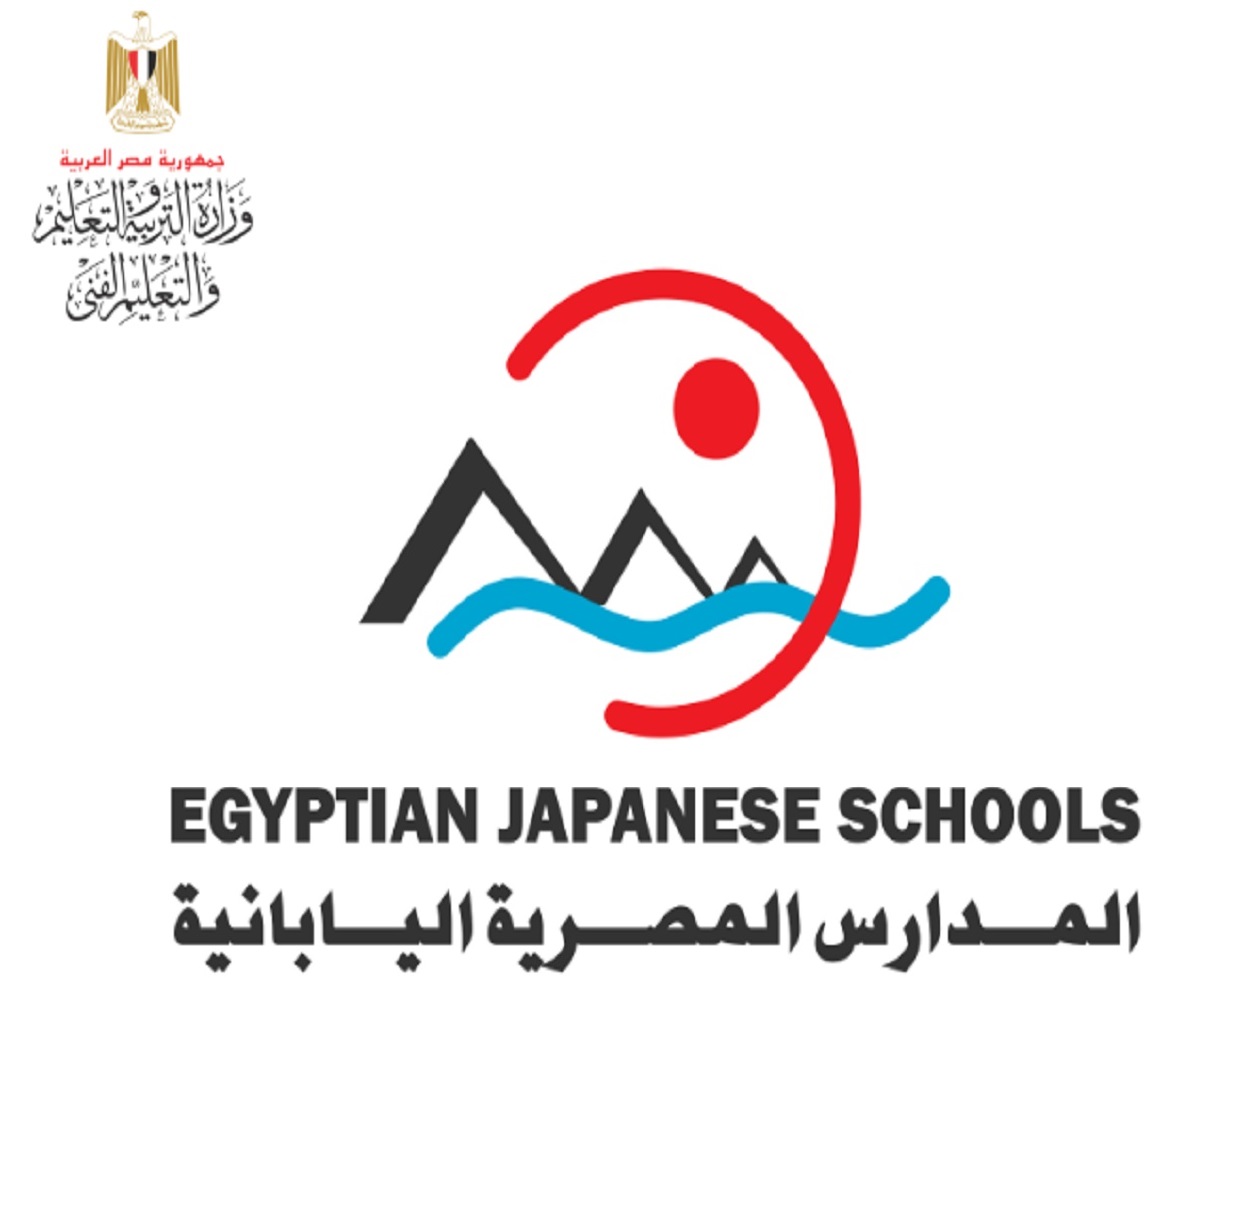 التقديم للمدارس المصرية اليابانية